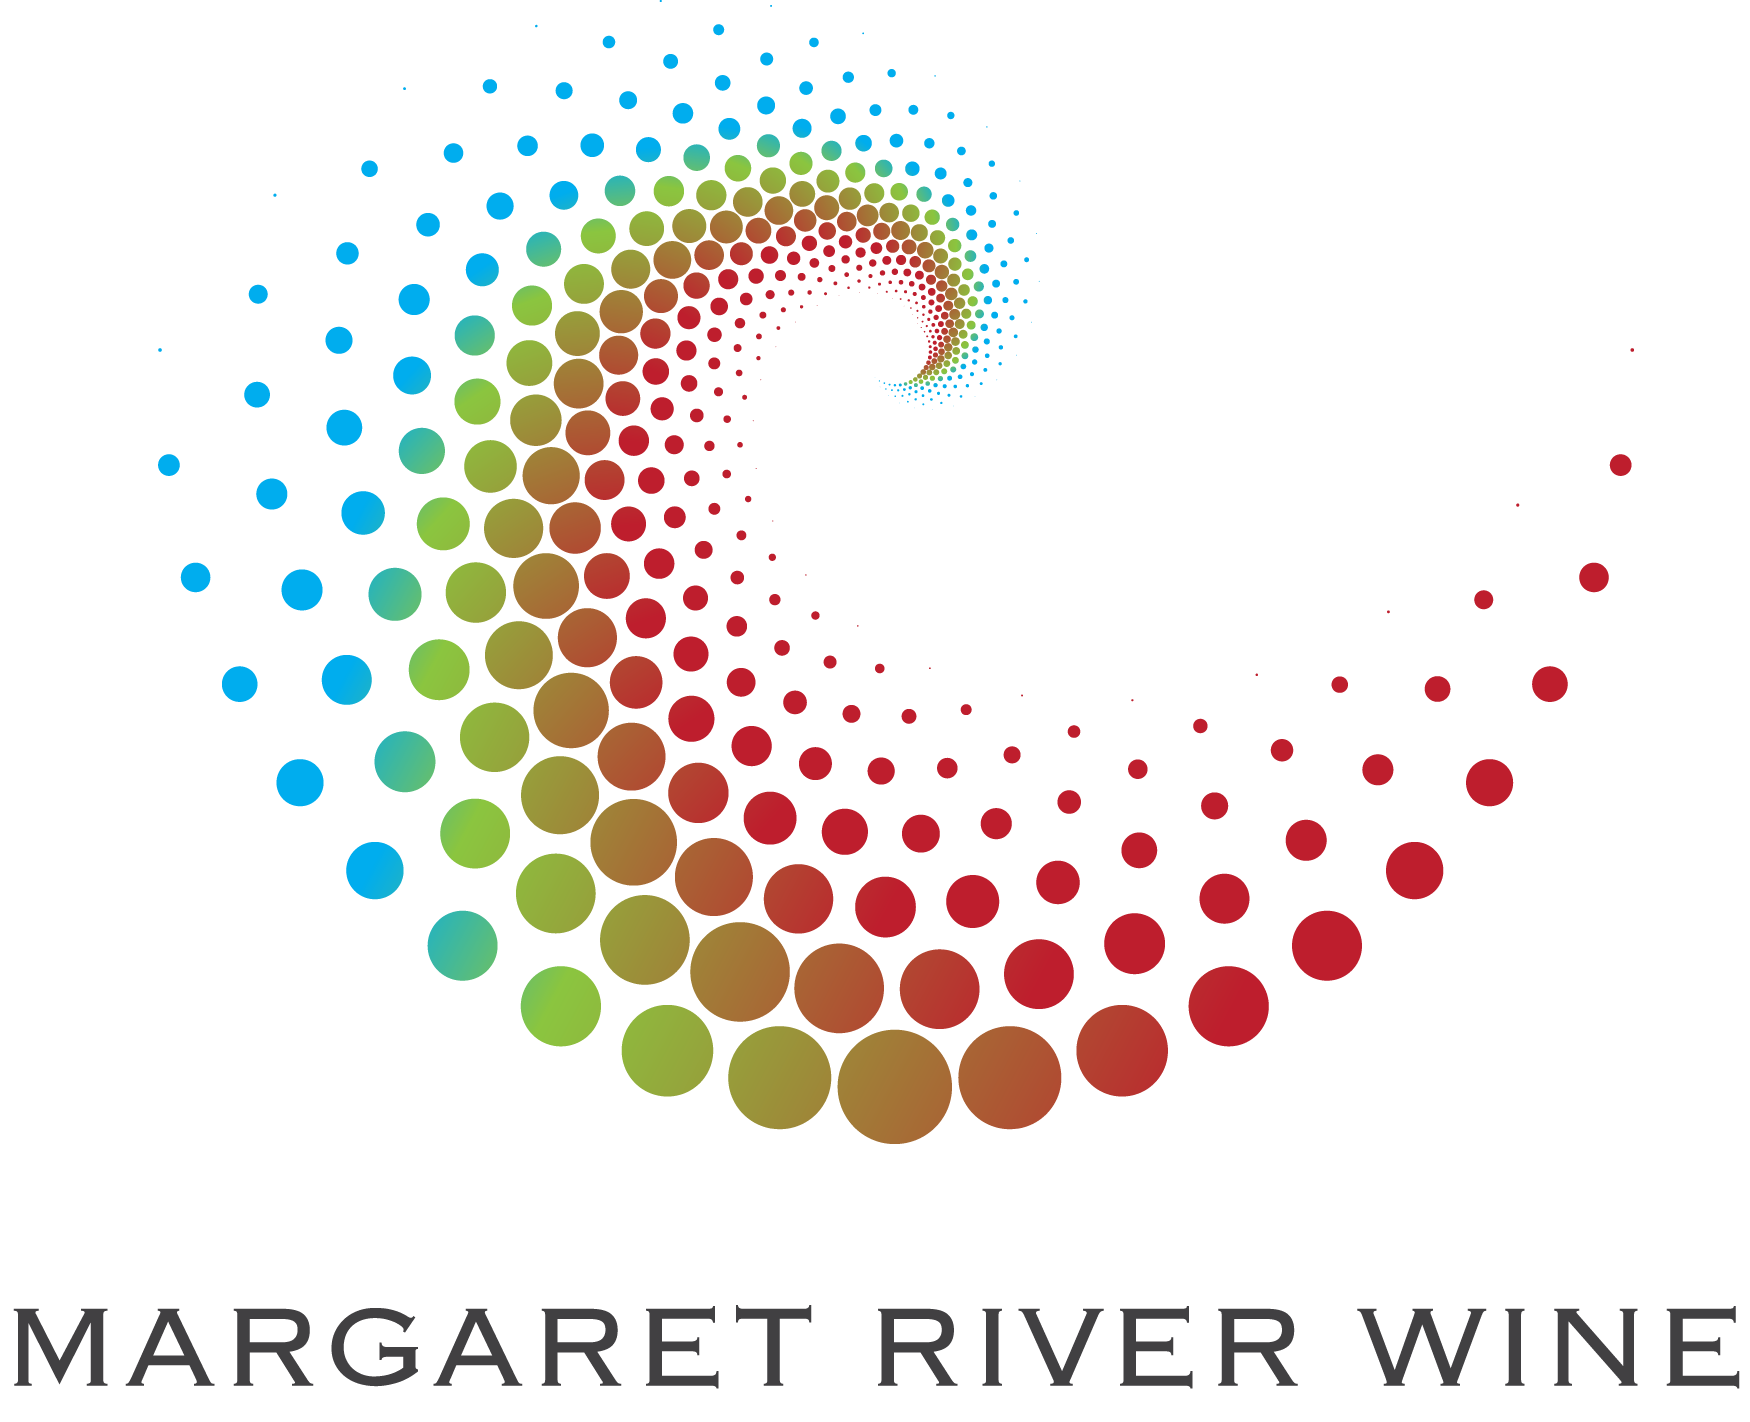 Margaret River Wine Association